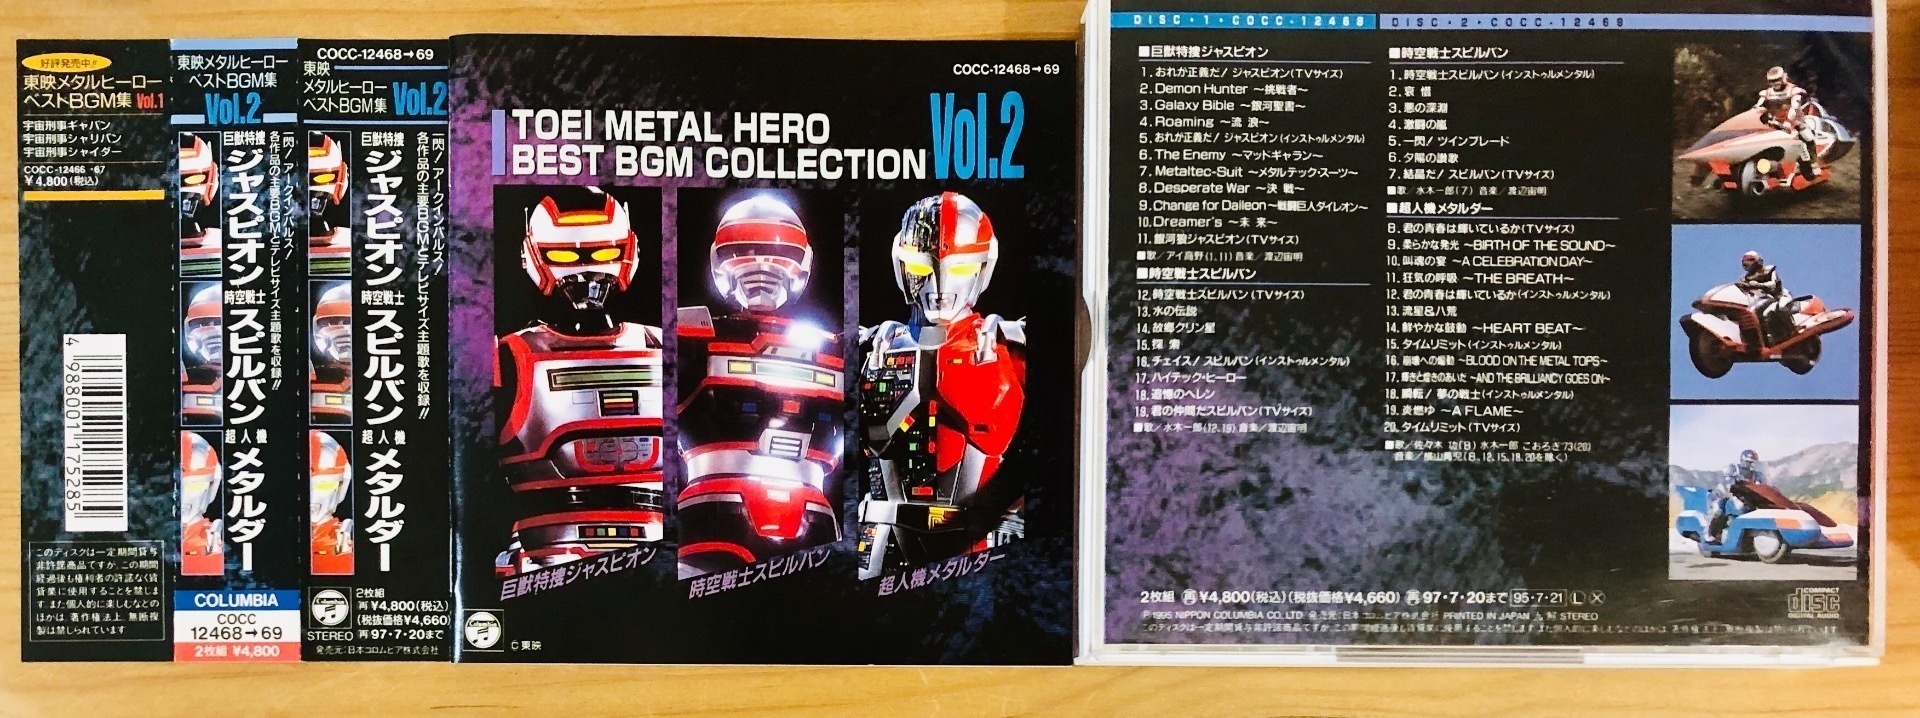 DVD 【※※※】[全4巻セット]超人機メタルダー VOL.1~4-